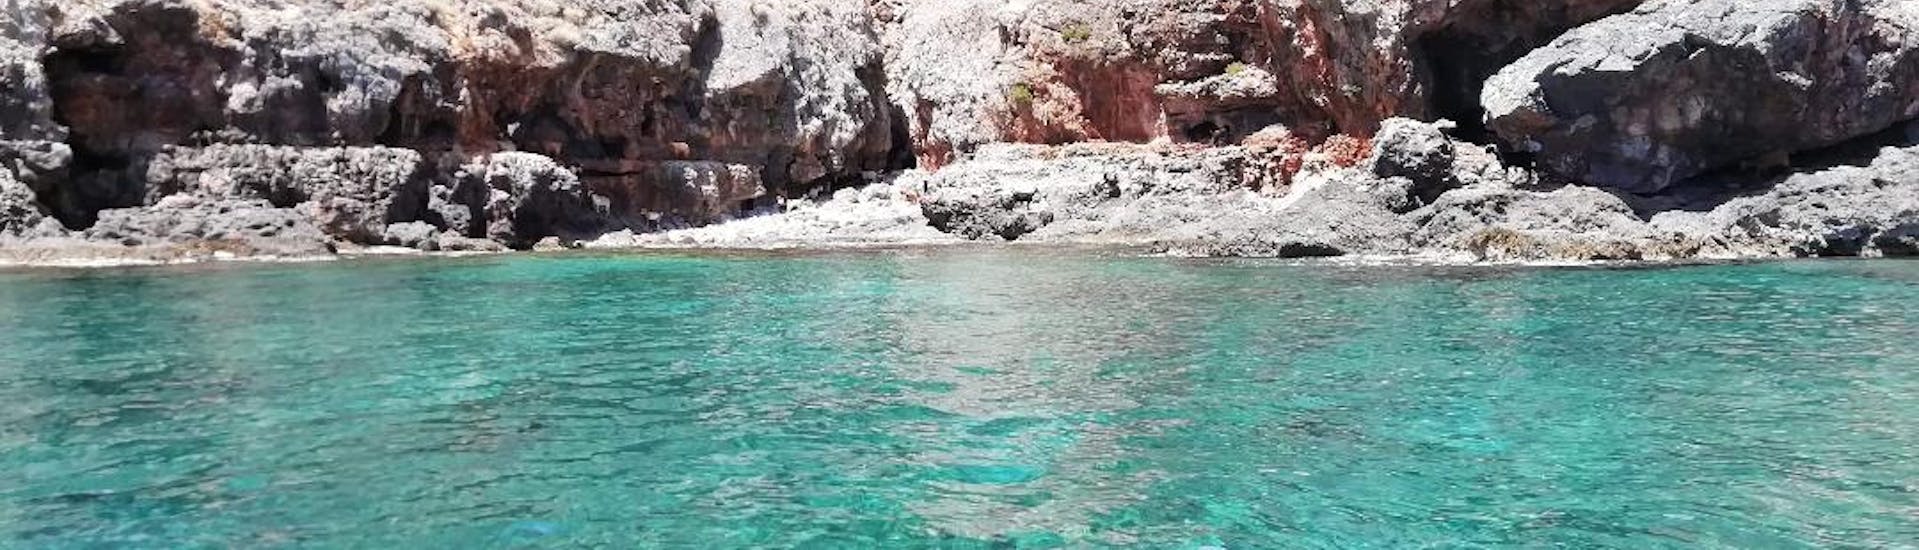 La côte rocheuse d'Antikythira que vous pourrez découvrir lors de la balade privée en bateau au lagon de Balos et Antikythira.